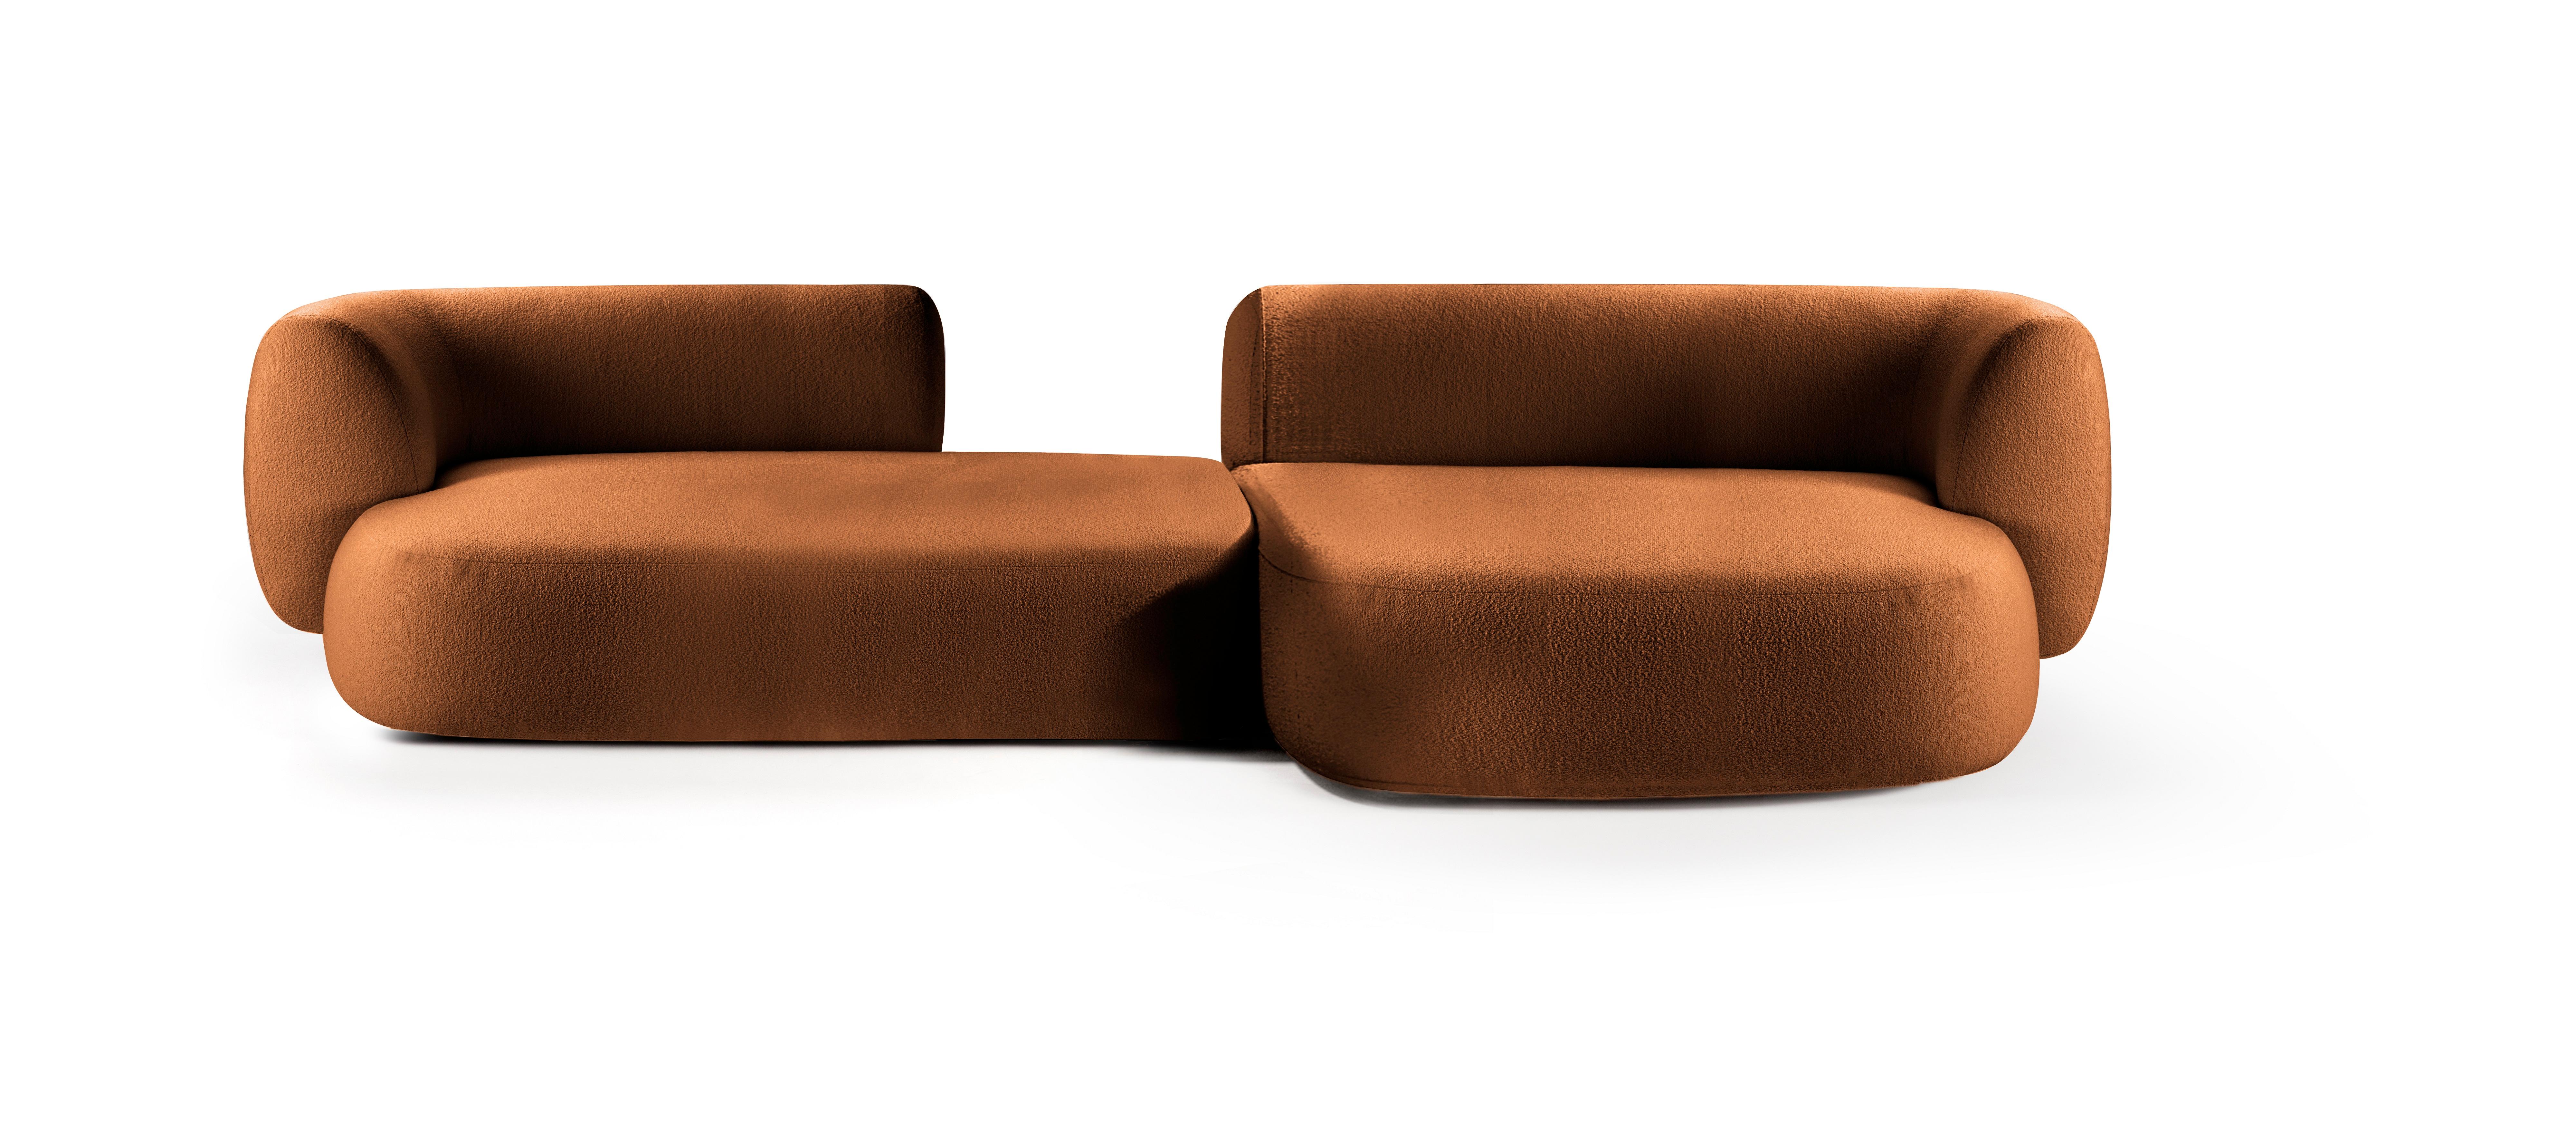 Hug modulares sofa von Collector
Abmessungen: B 330 x T 160 x H 74 cm.
DX-Anschlusselement Lückenmodul: B 180 x T 98 cm x H 74.
Modul Chaise longue XL: B 150 x T 160 x H 74 cm.
MATERIALIEN: Stoff, massives Eichenholz.

Dieses Sofa besteht aus